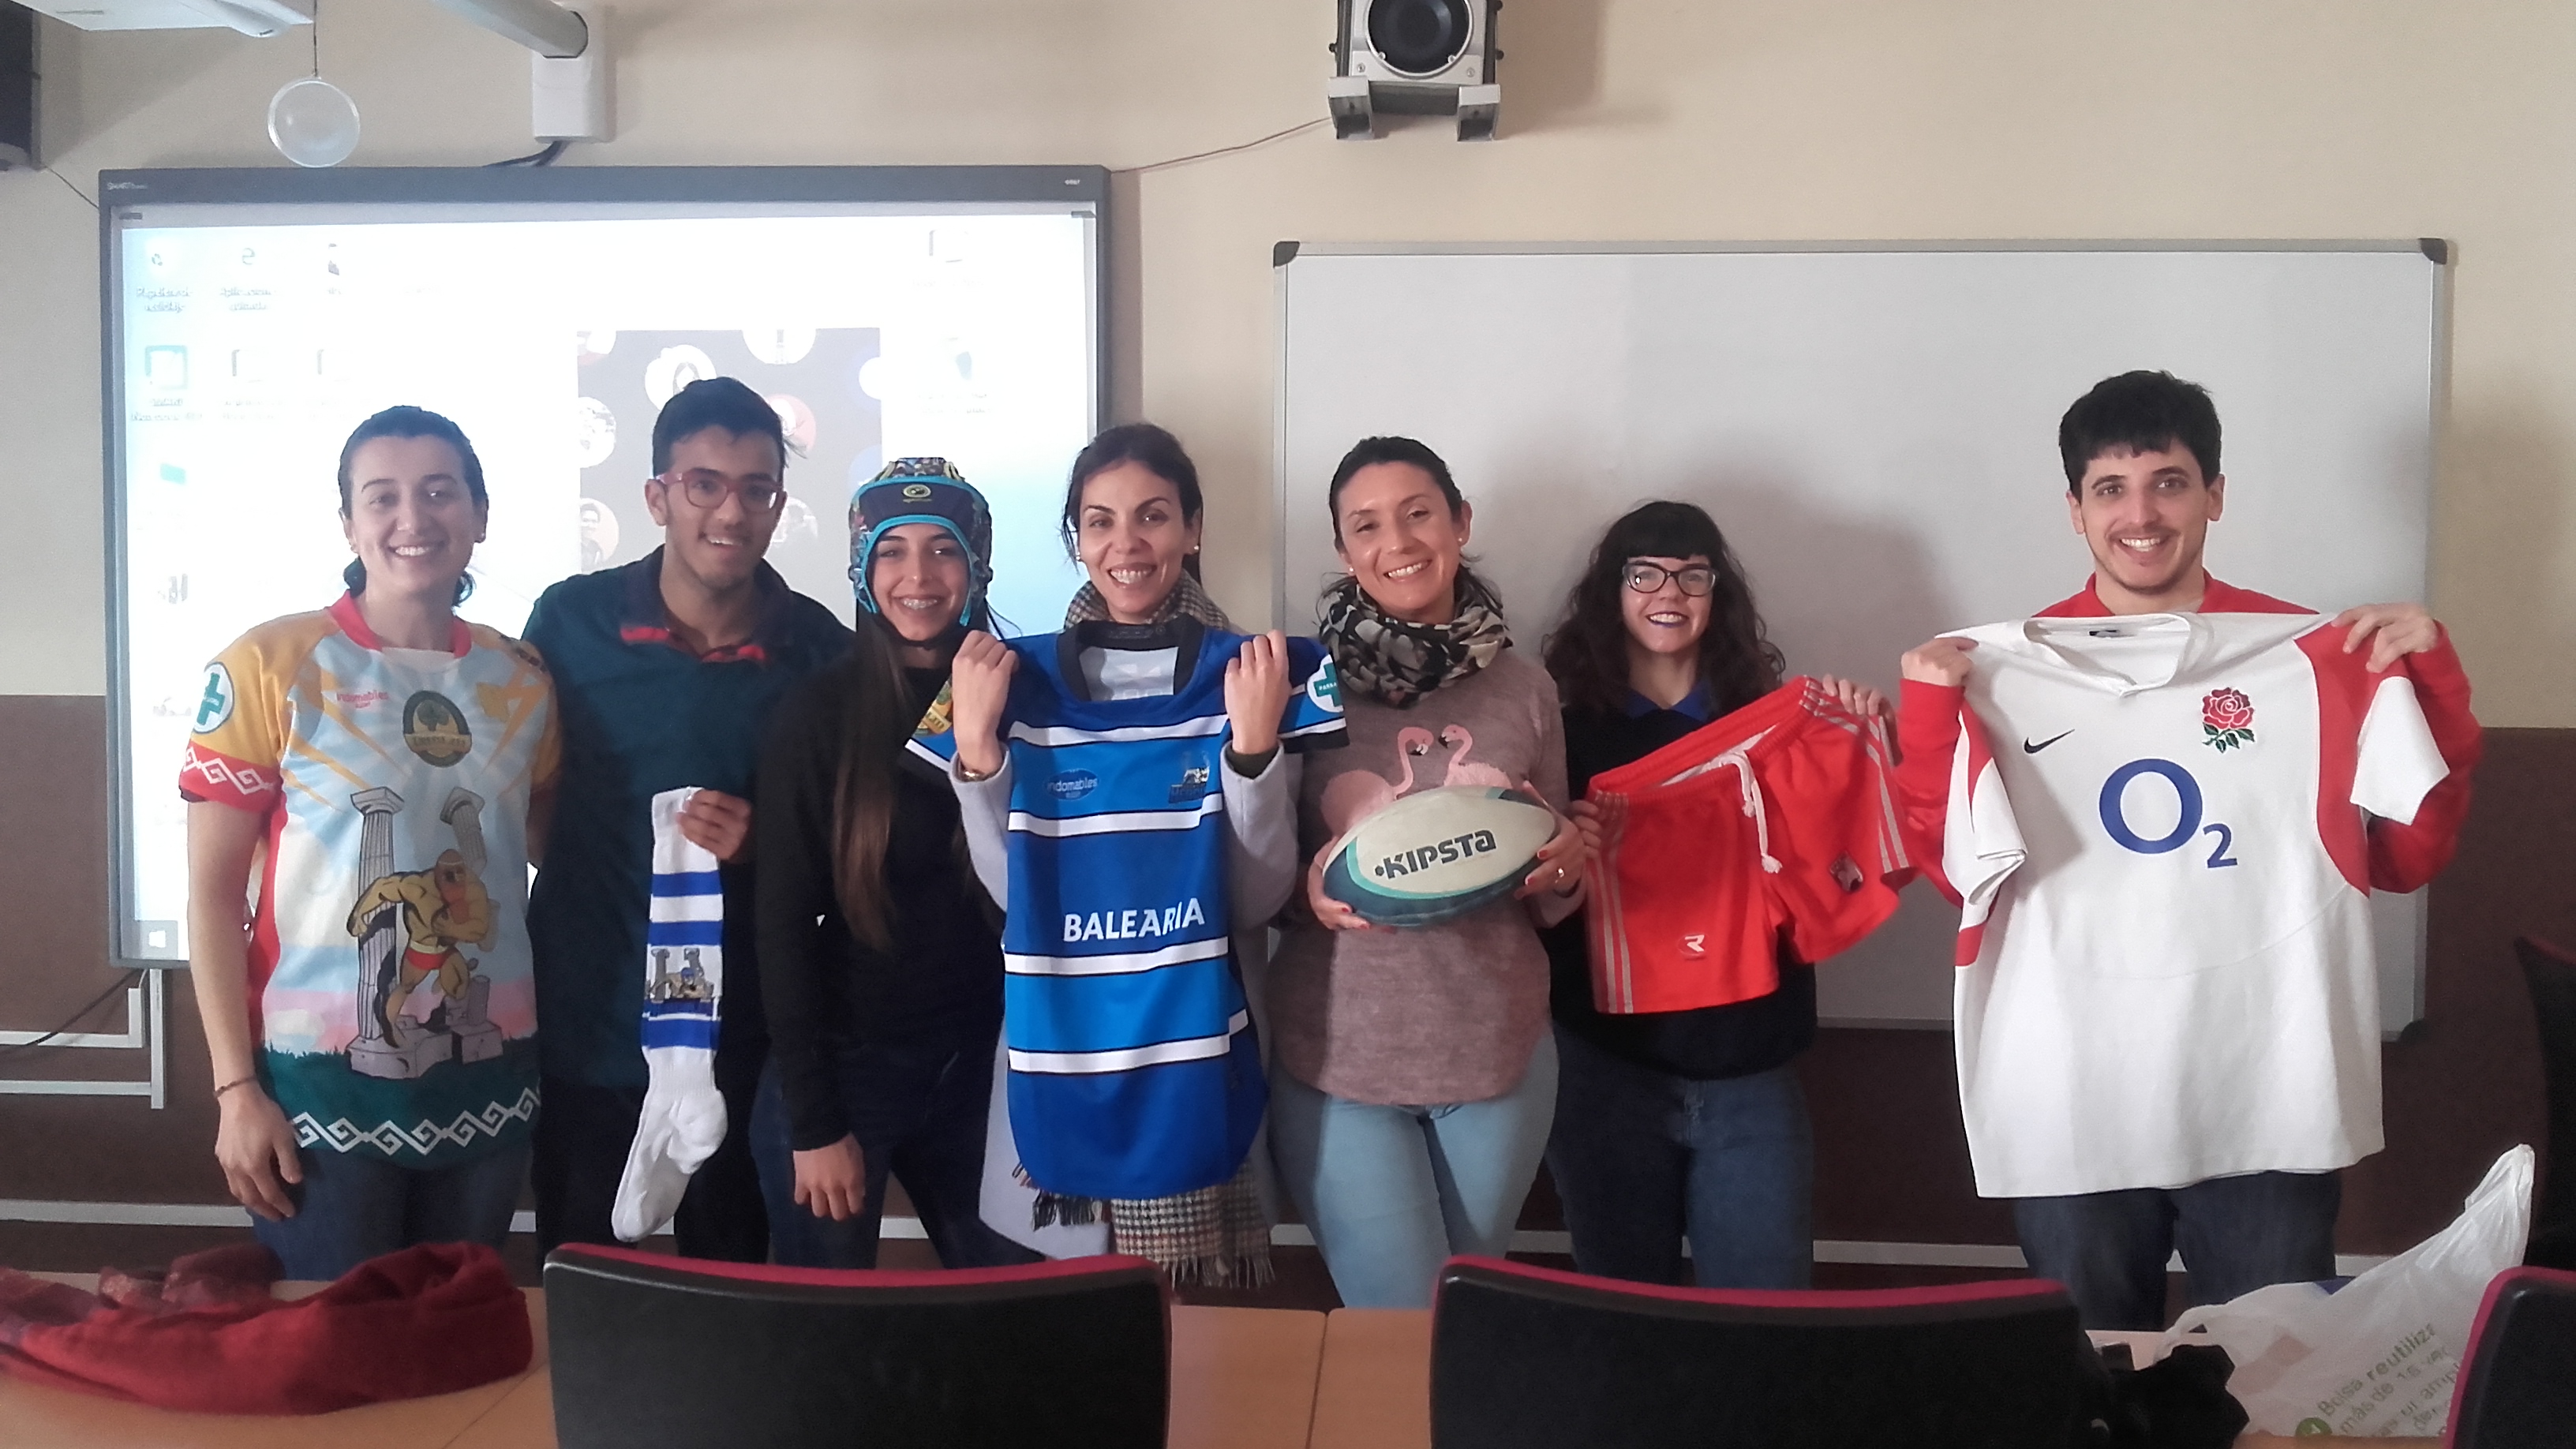 Alba Corredera, alumna de inglés y jugadora de rugby, ha vuelto a dar una interesante y amena charla sobre este deporte.